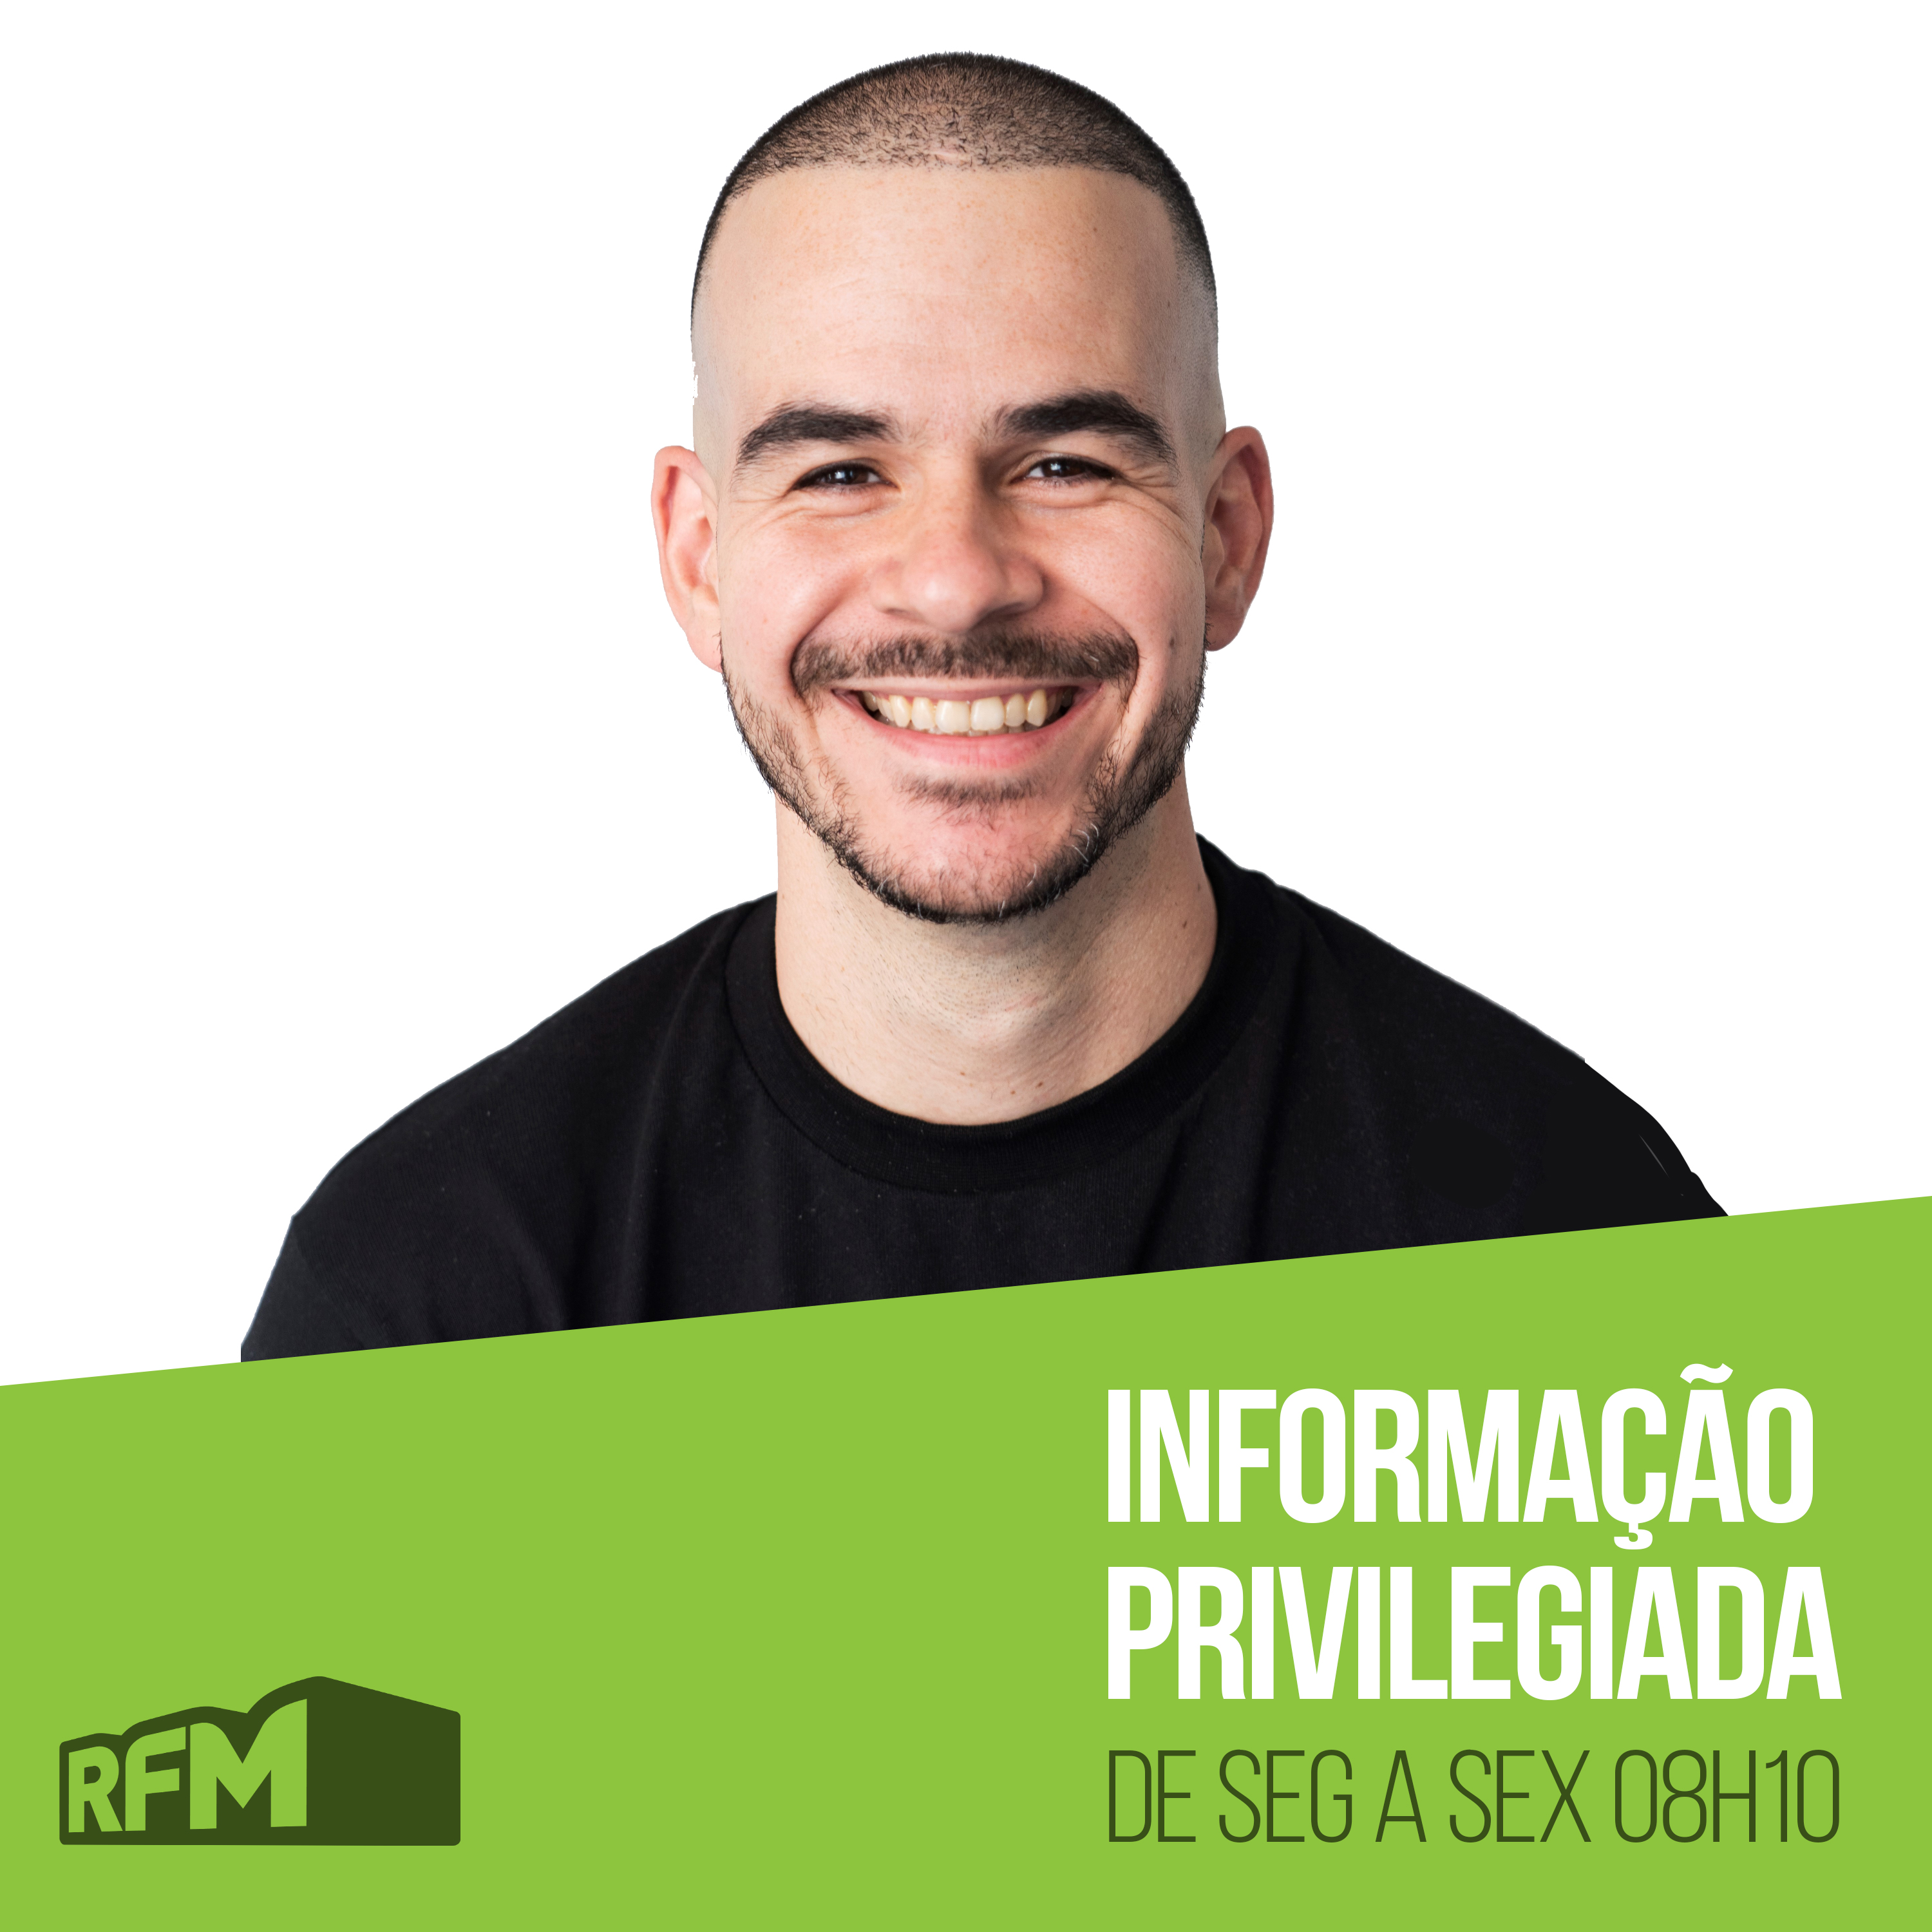 RFM - Informação Privilegiada: UM ELEITOR EM ISOLAMENTO